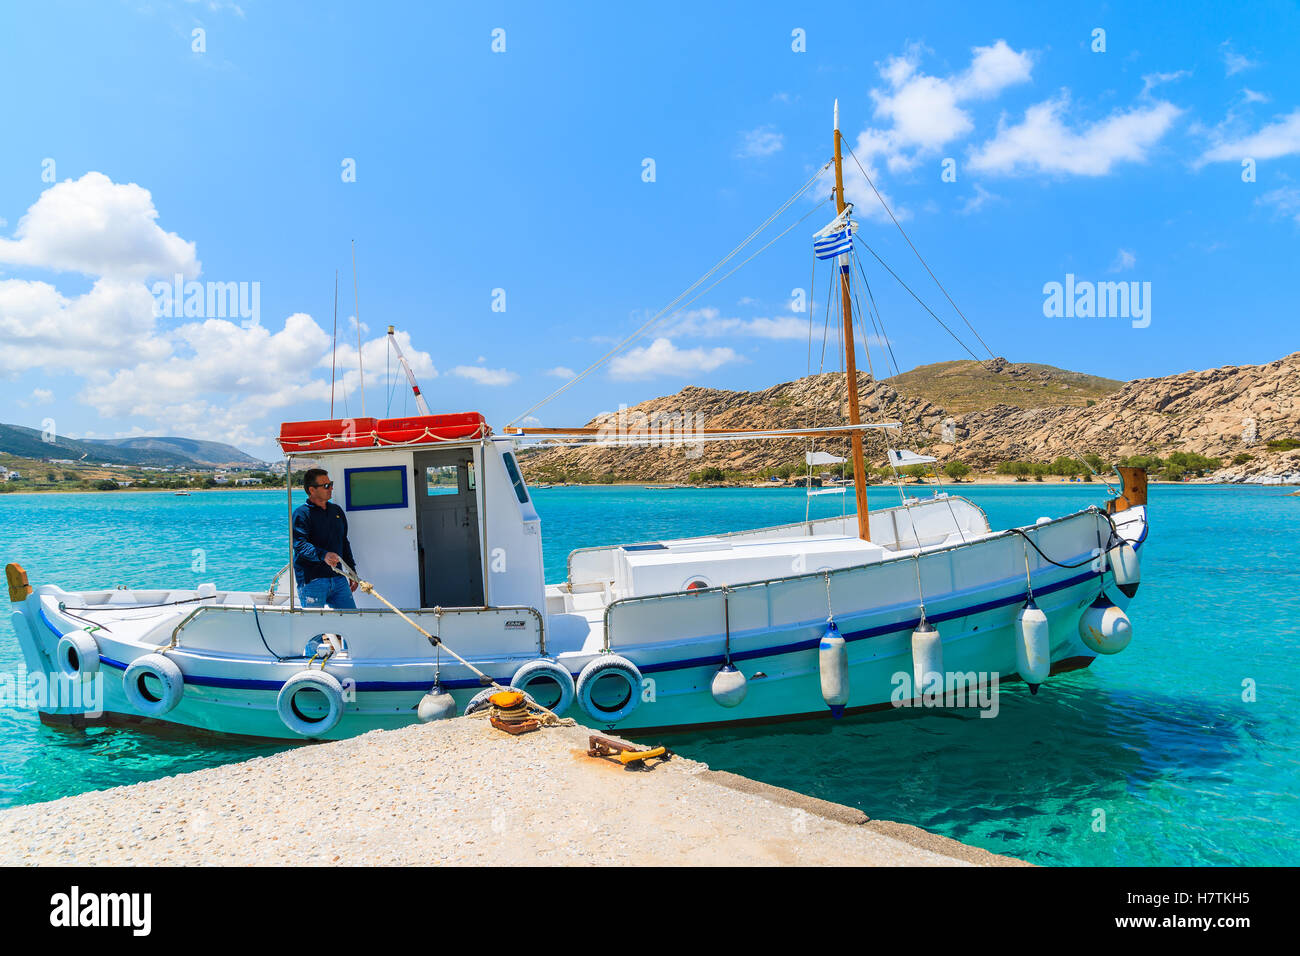 L'île de Paros, GRÈCE - 20 MAI 2016 : pêcheur en bateau de pêche typique de la baie d'amarrage en mer isolée sur l'île de Paros, Grèce. Banque D'Images